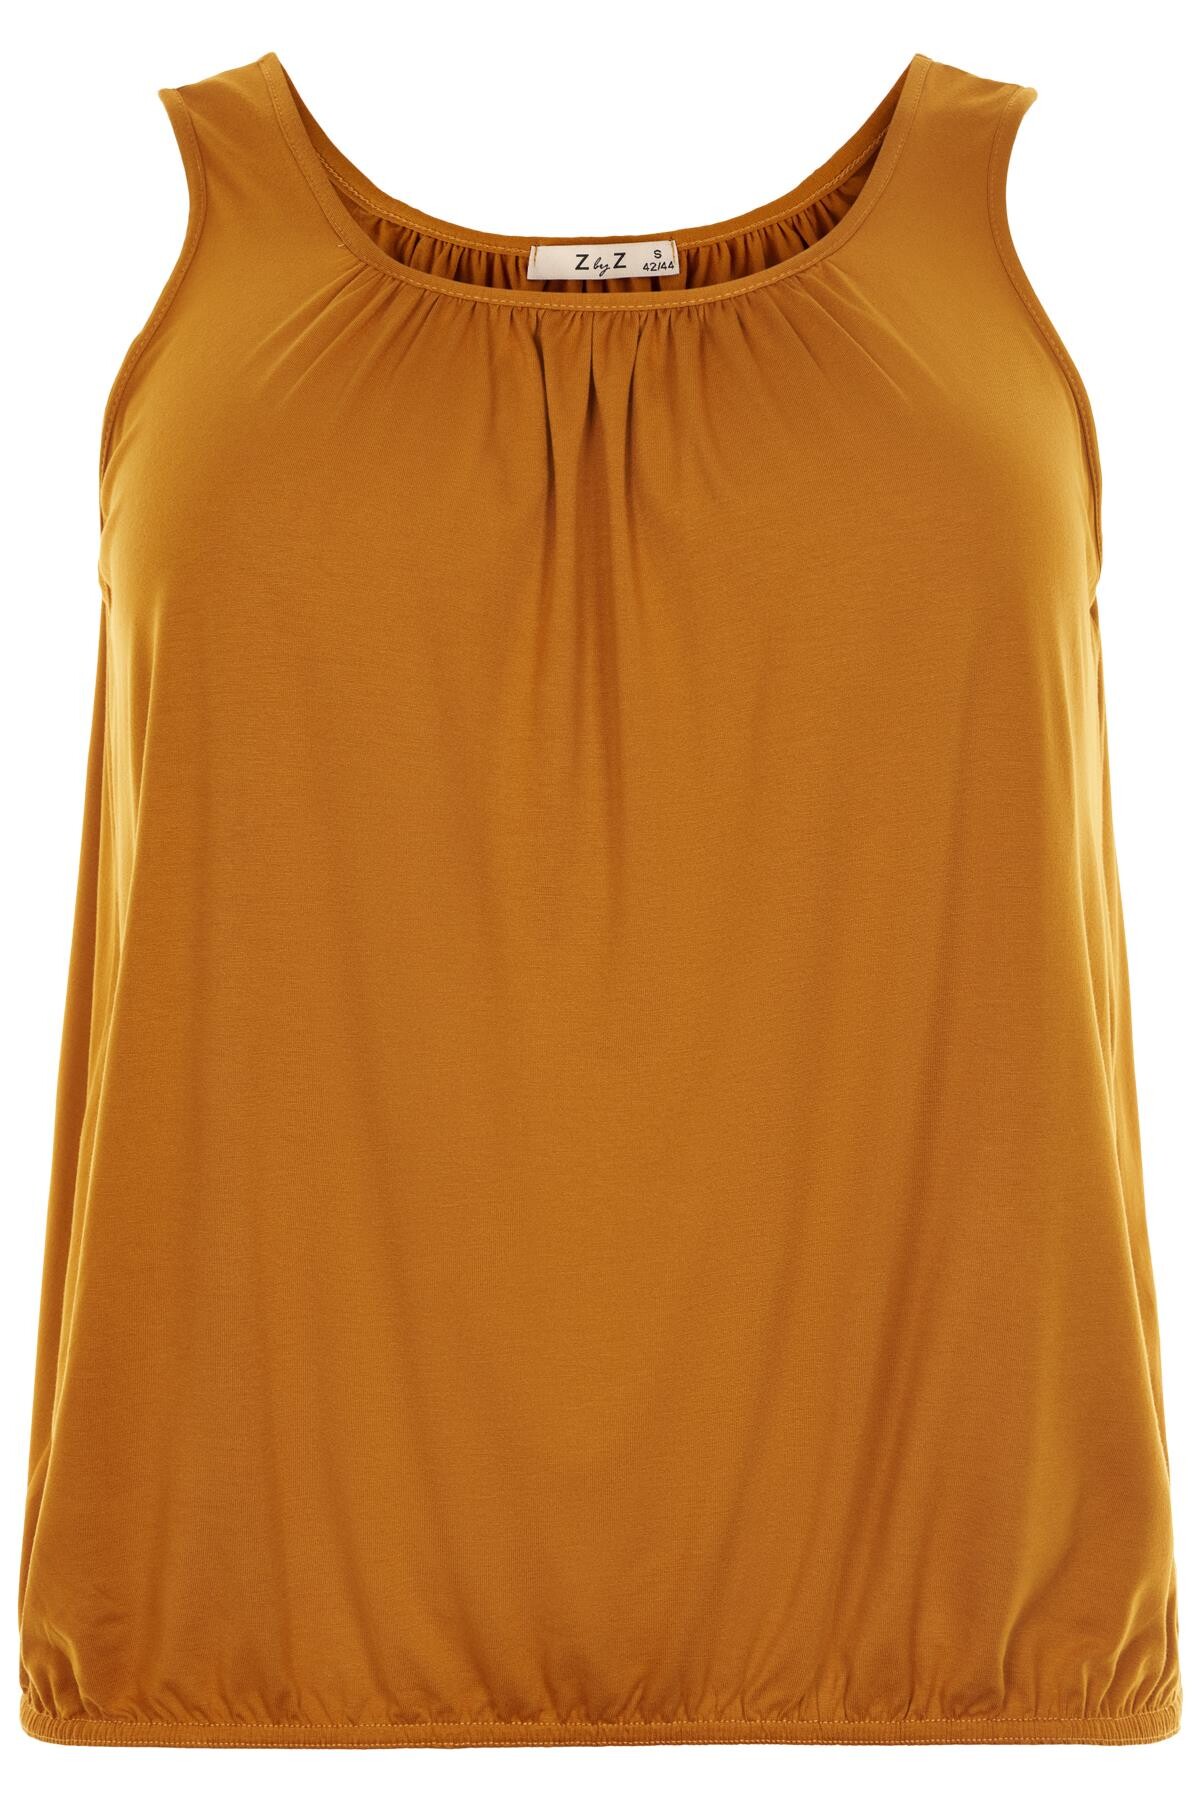 Zbyz Orange Top, Farve: Orange, Størrelse: 54/56, Dame